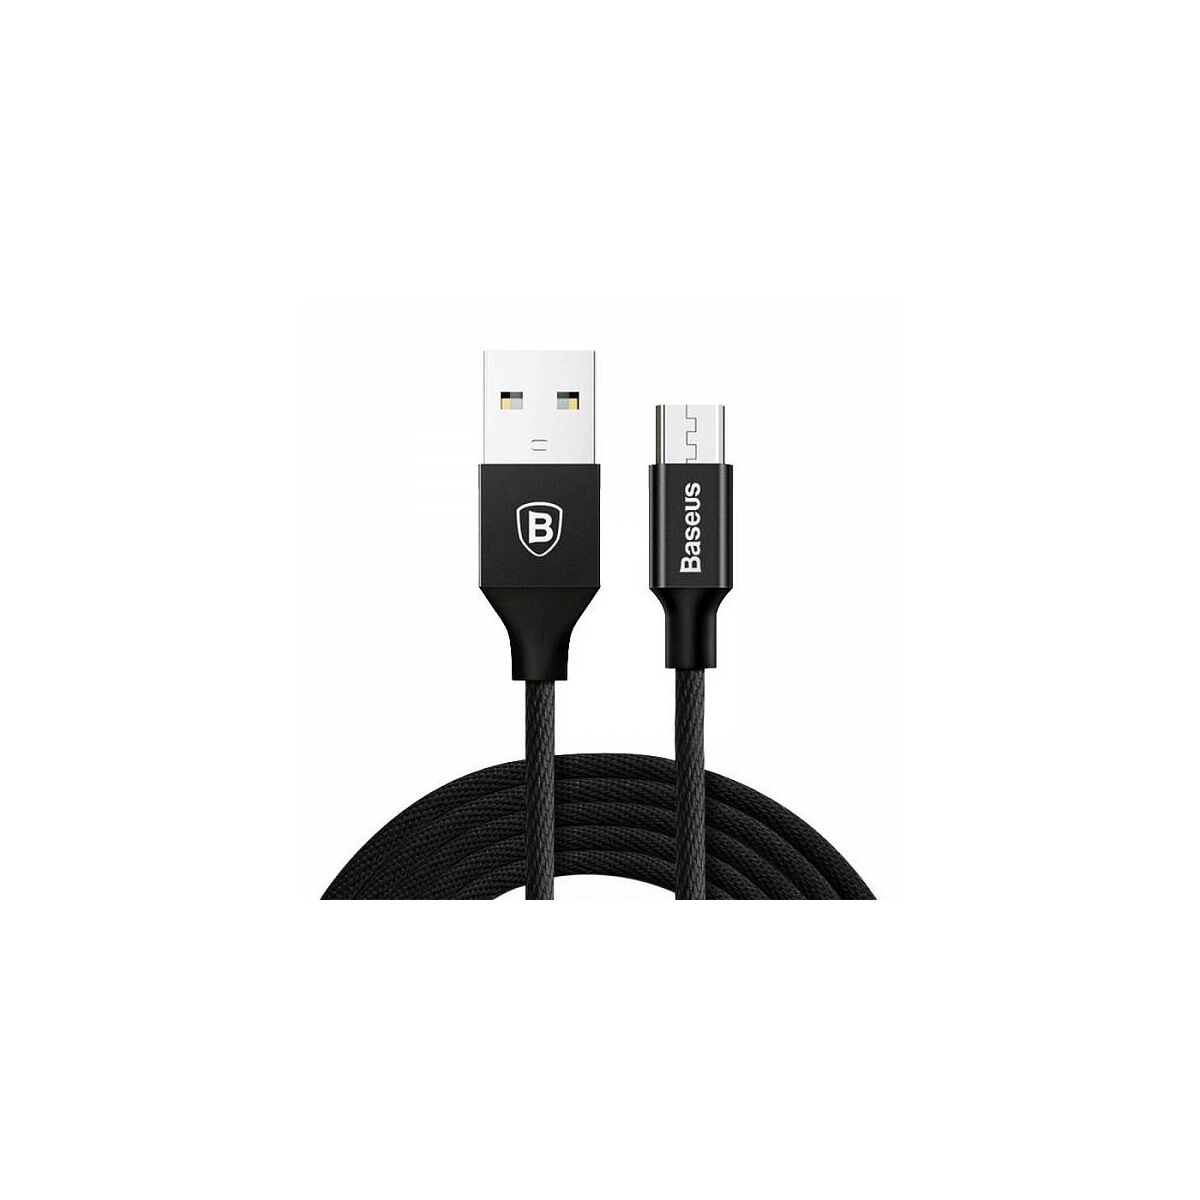 Baseus Micro USB kábel, Yiven kábel, 2A, 1m, fekete (CAMYW-A01)